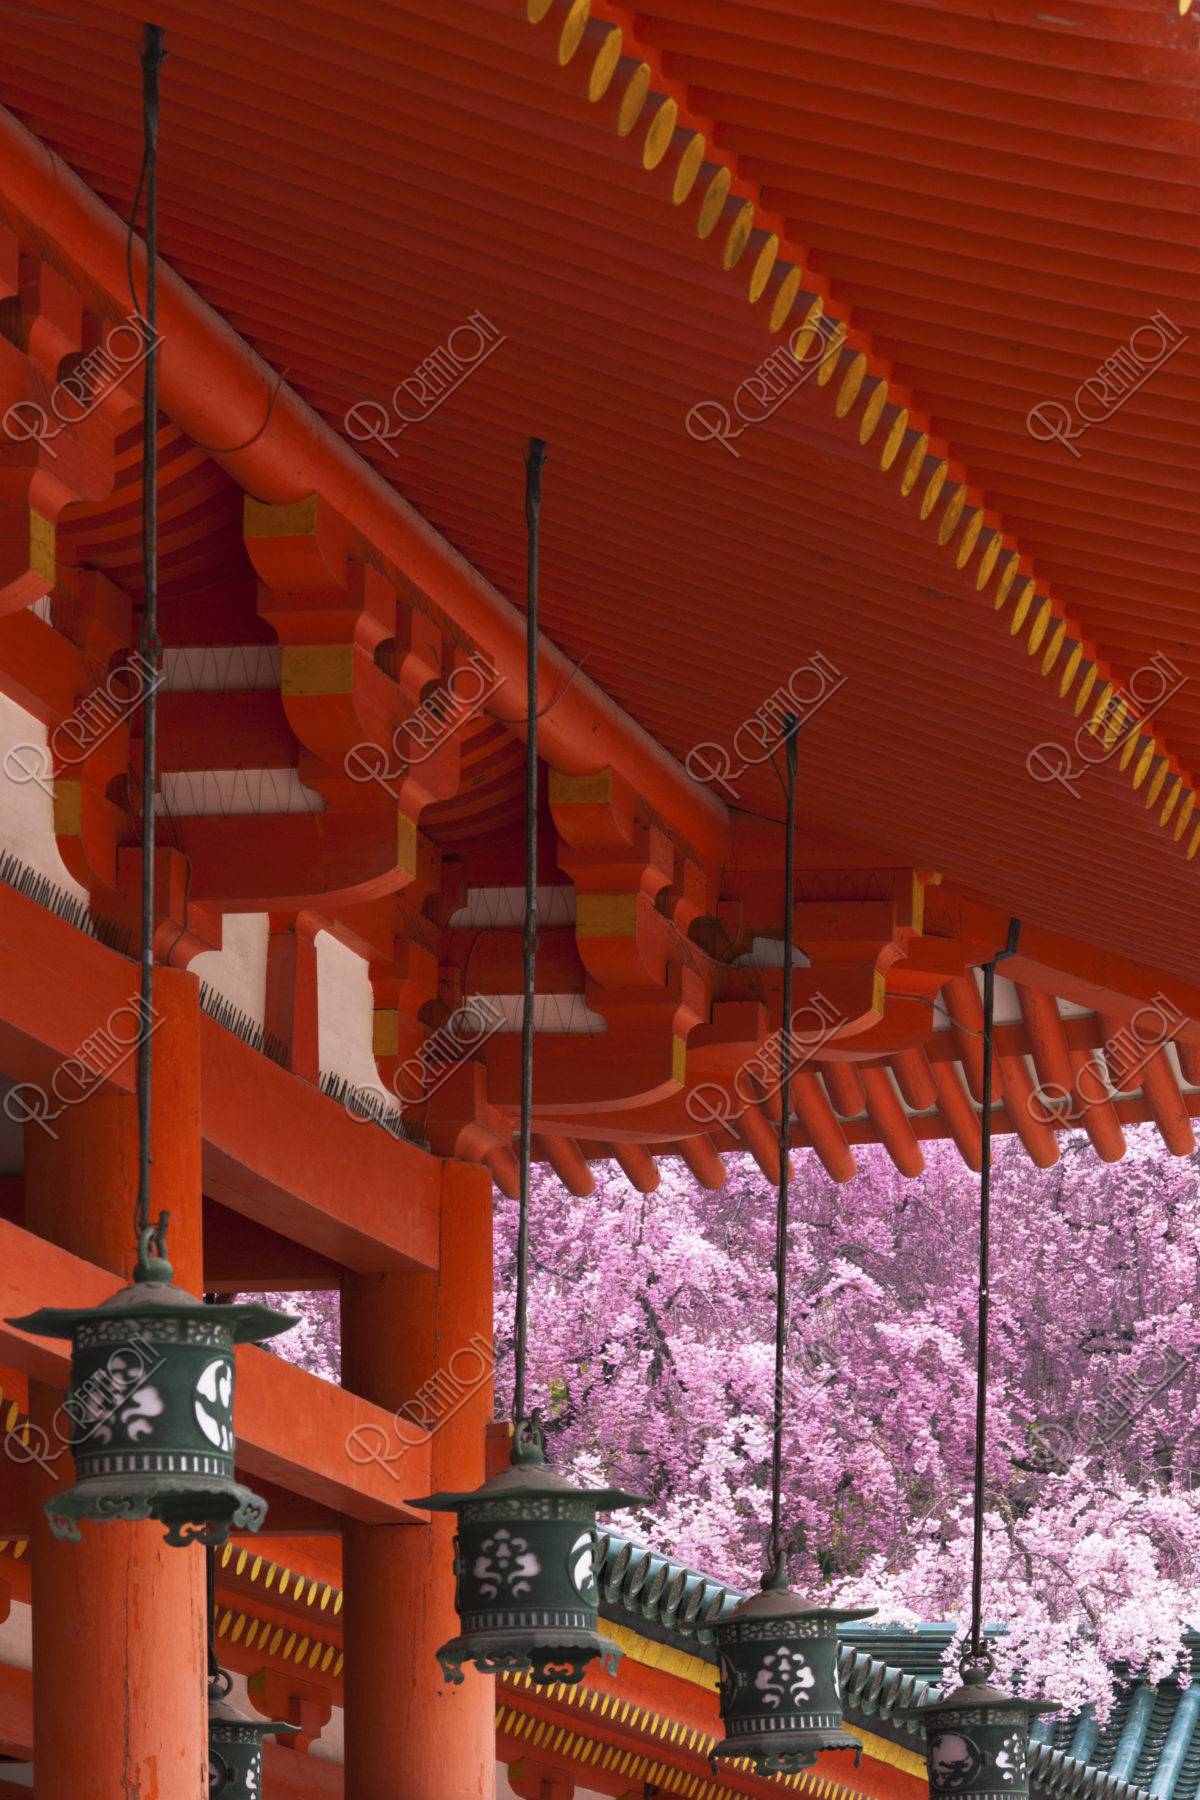 平安神宮 桜